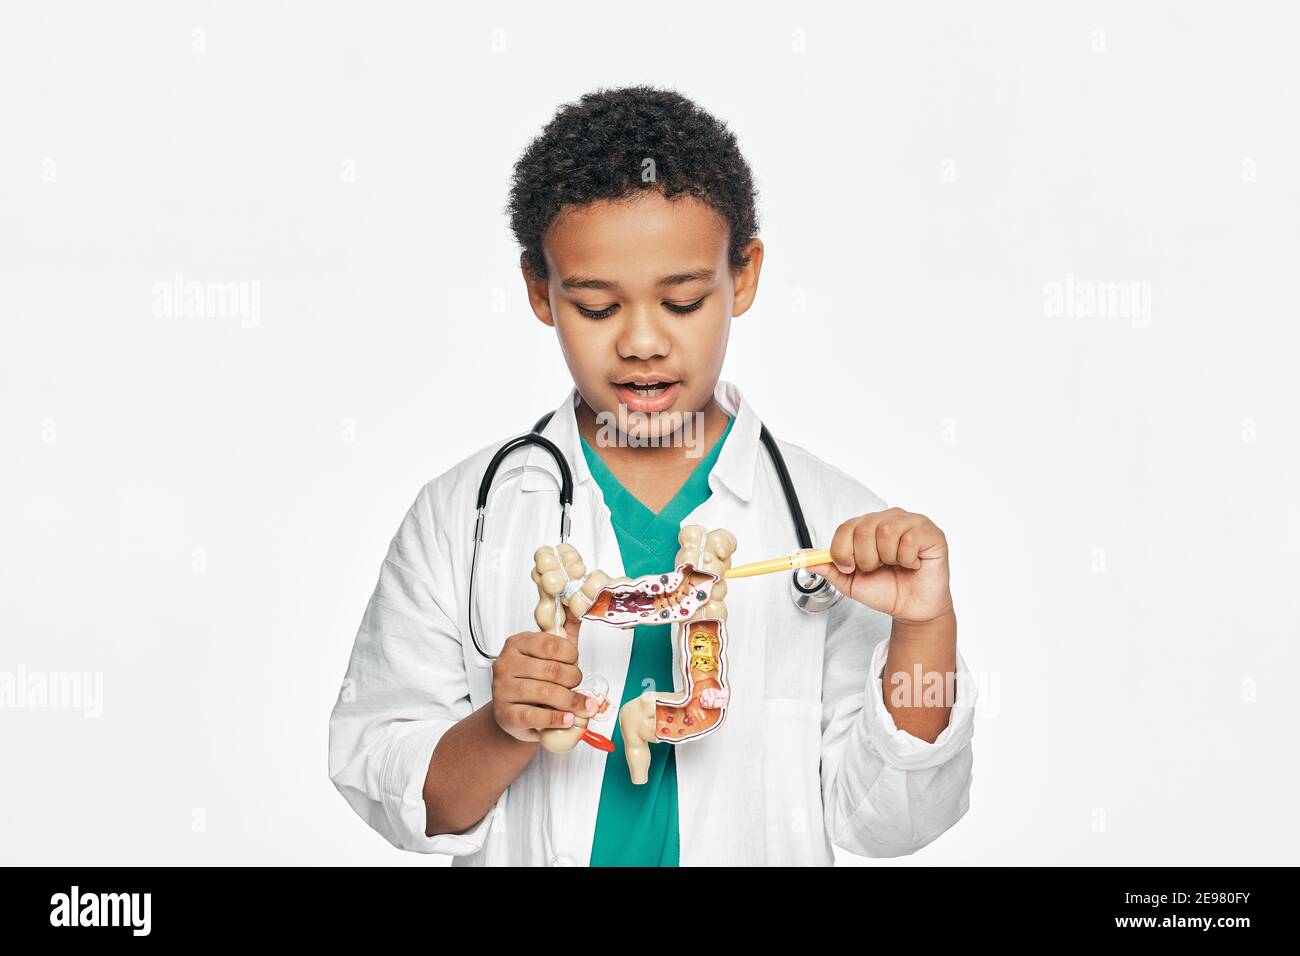 Afroamericano ragazzo durante l'apprendimento anatomia umana, tiene un modello anatomico di intestini, per studiare la struttura del corpo Foto Stock